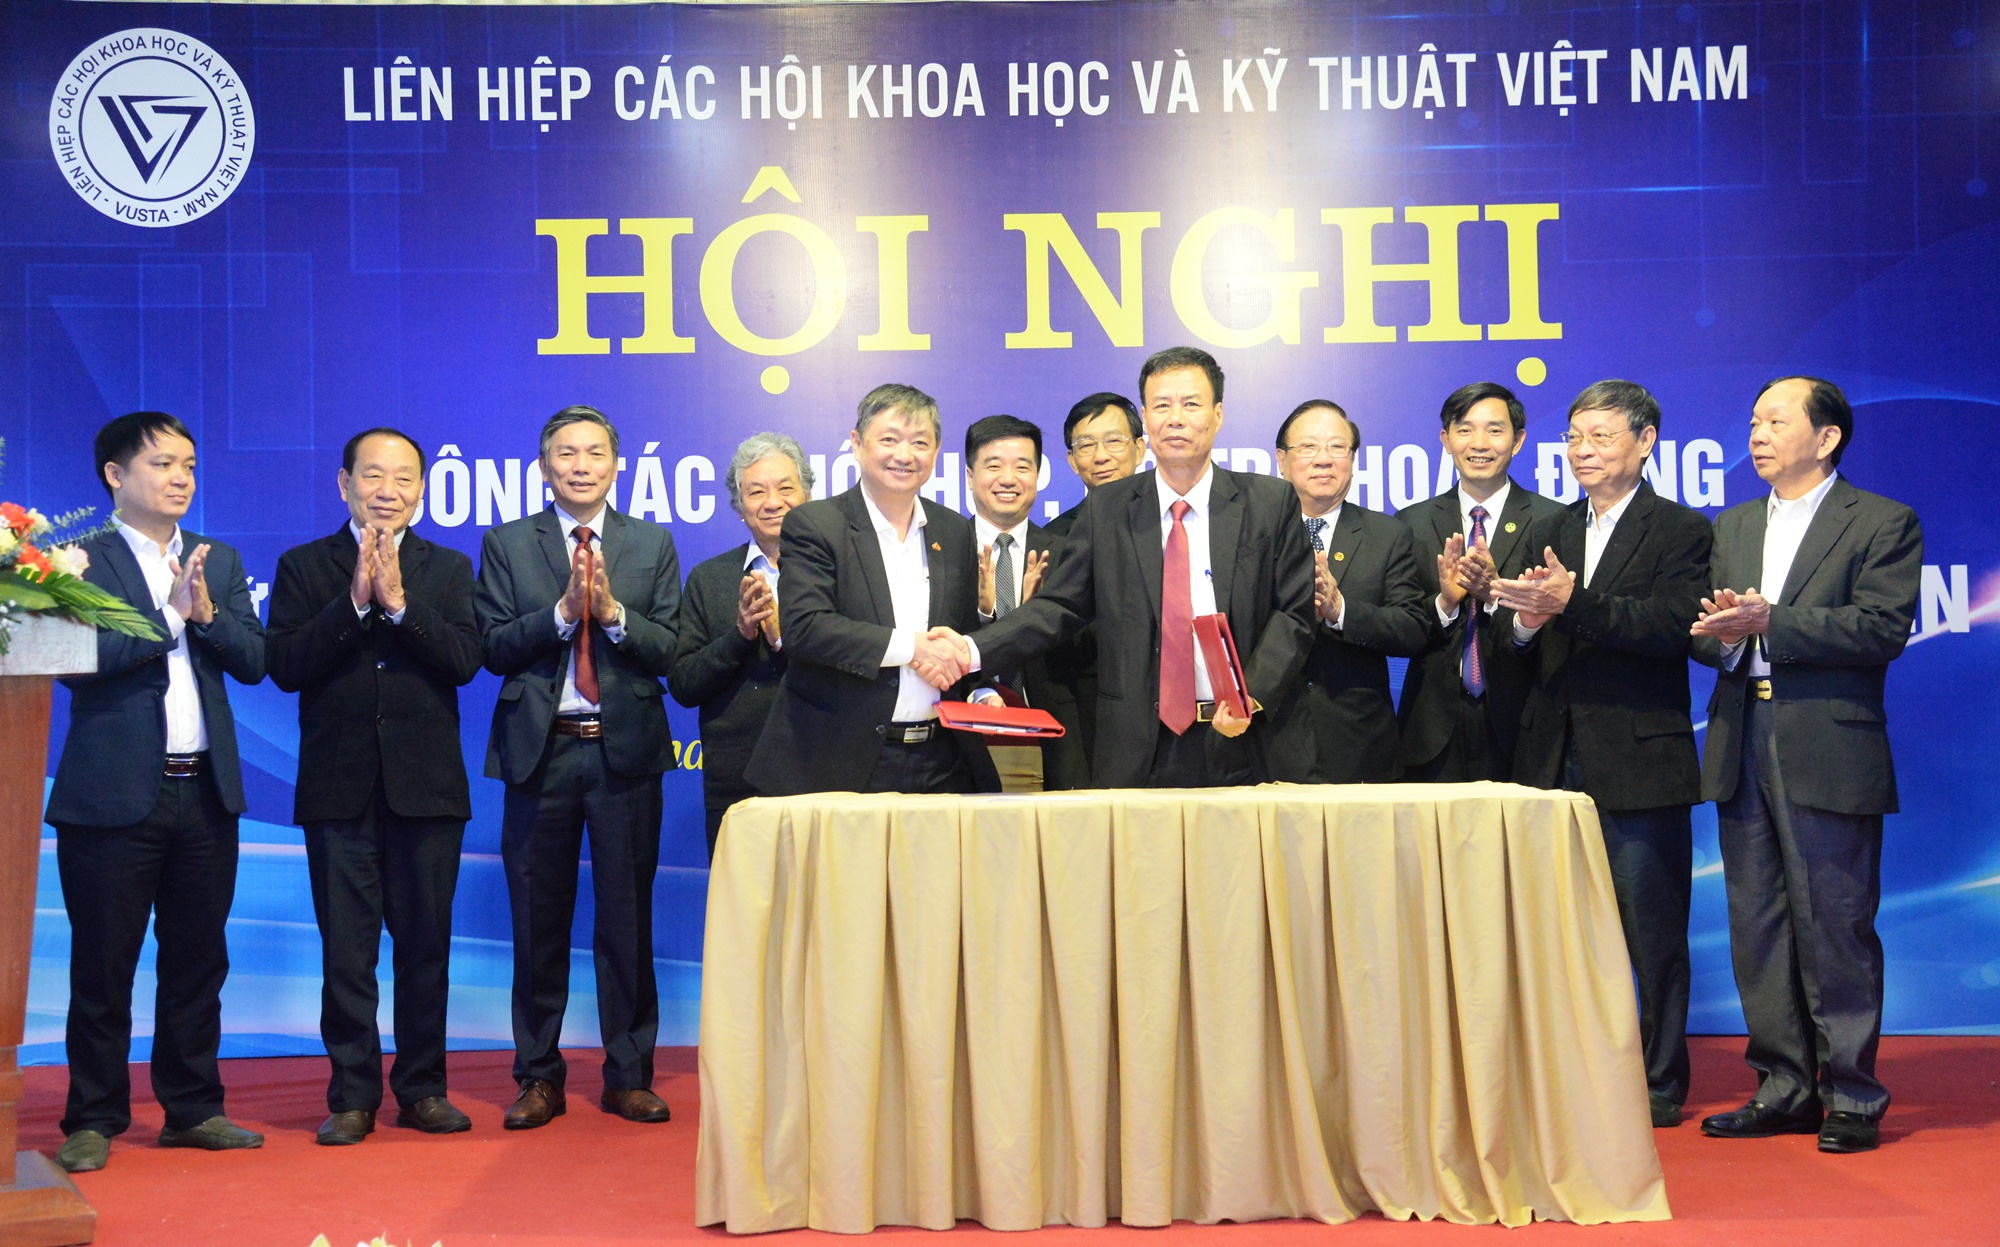 Tổng hội Xây dựng Việt Nam ký kết hợp tác với Liên hiệp các hội khoa học và kỹ thuật tỉnh Vĩnh Phúc